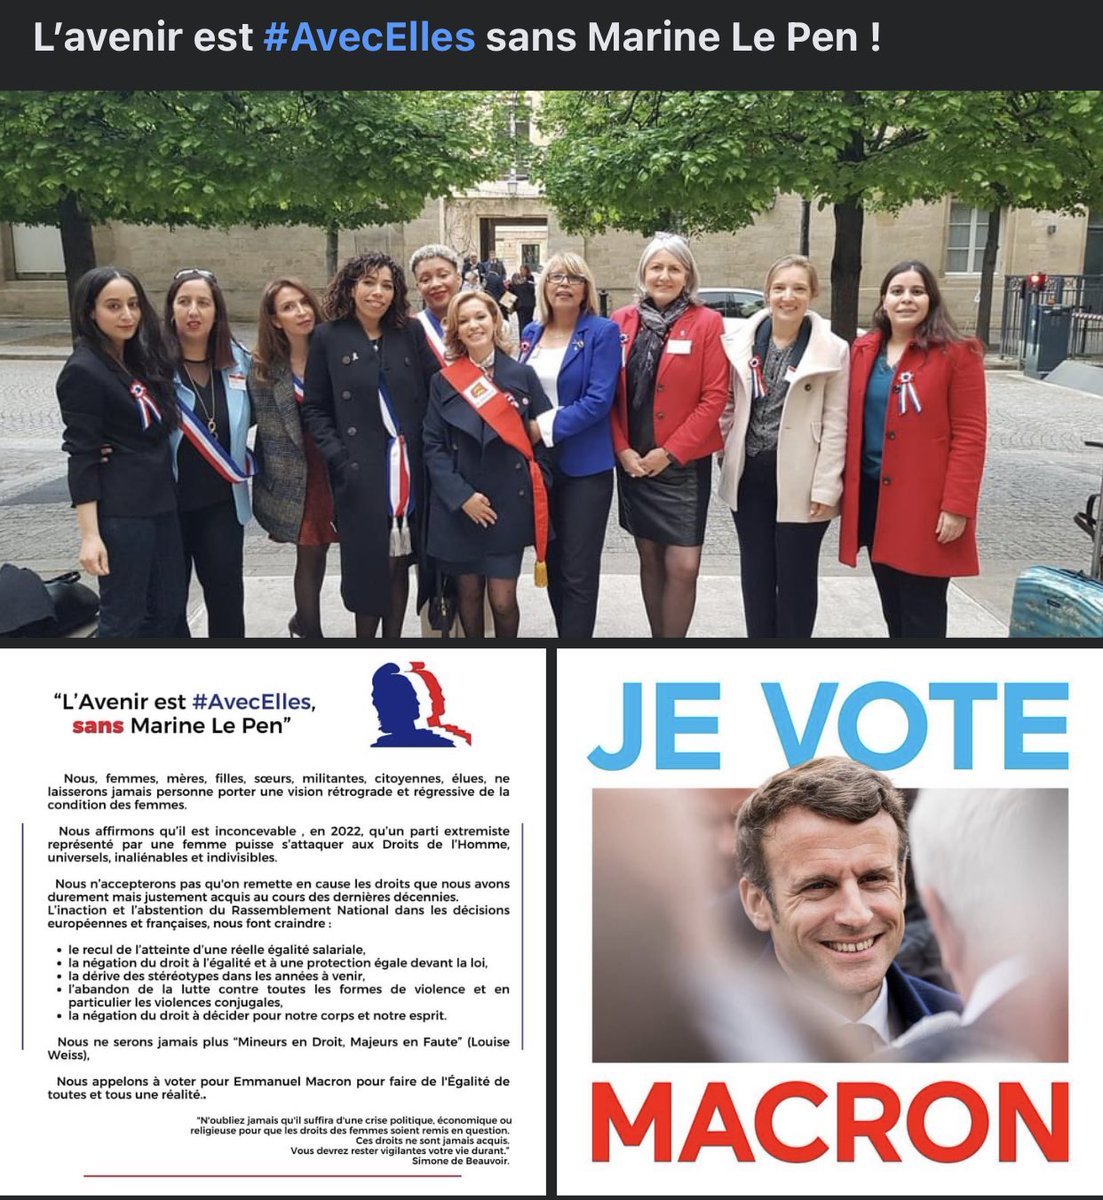 Dimanche je vote #EmmanuelMacron  #AvecElles #femmesdemocrates